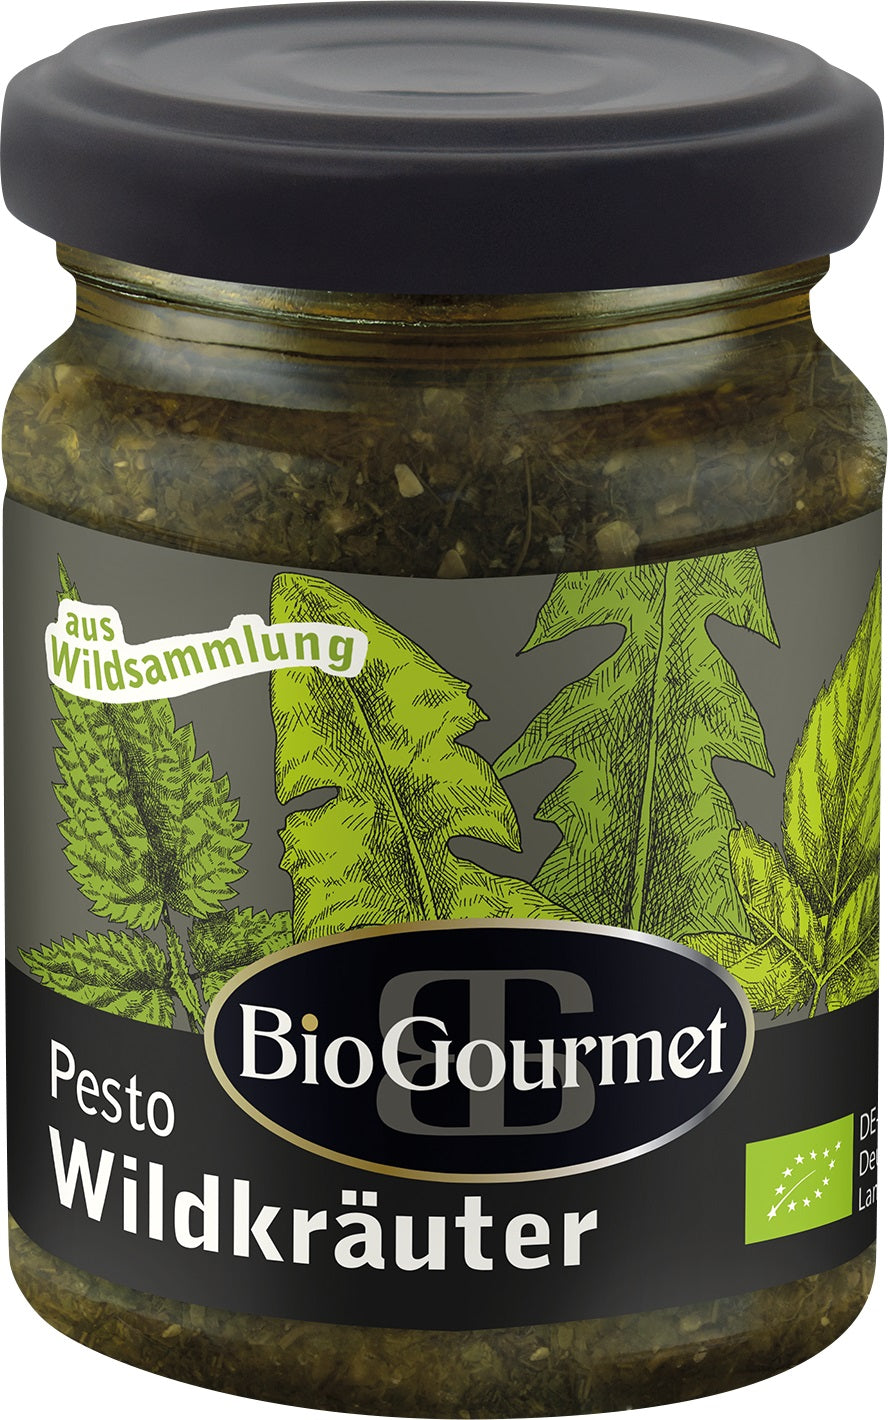 Bio Pesto Wildkräuter, mit Kräutern aus deutscher Wildsammlung, 6 Gläser a 120g